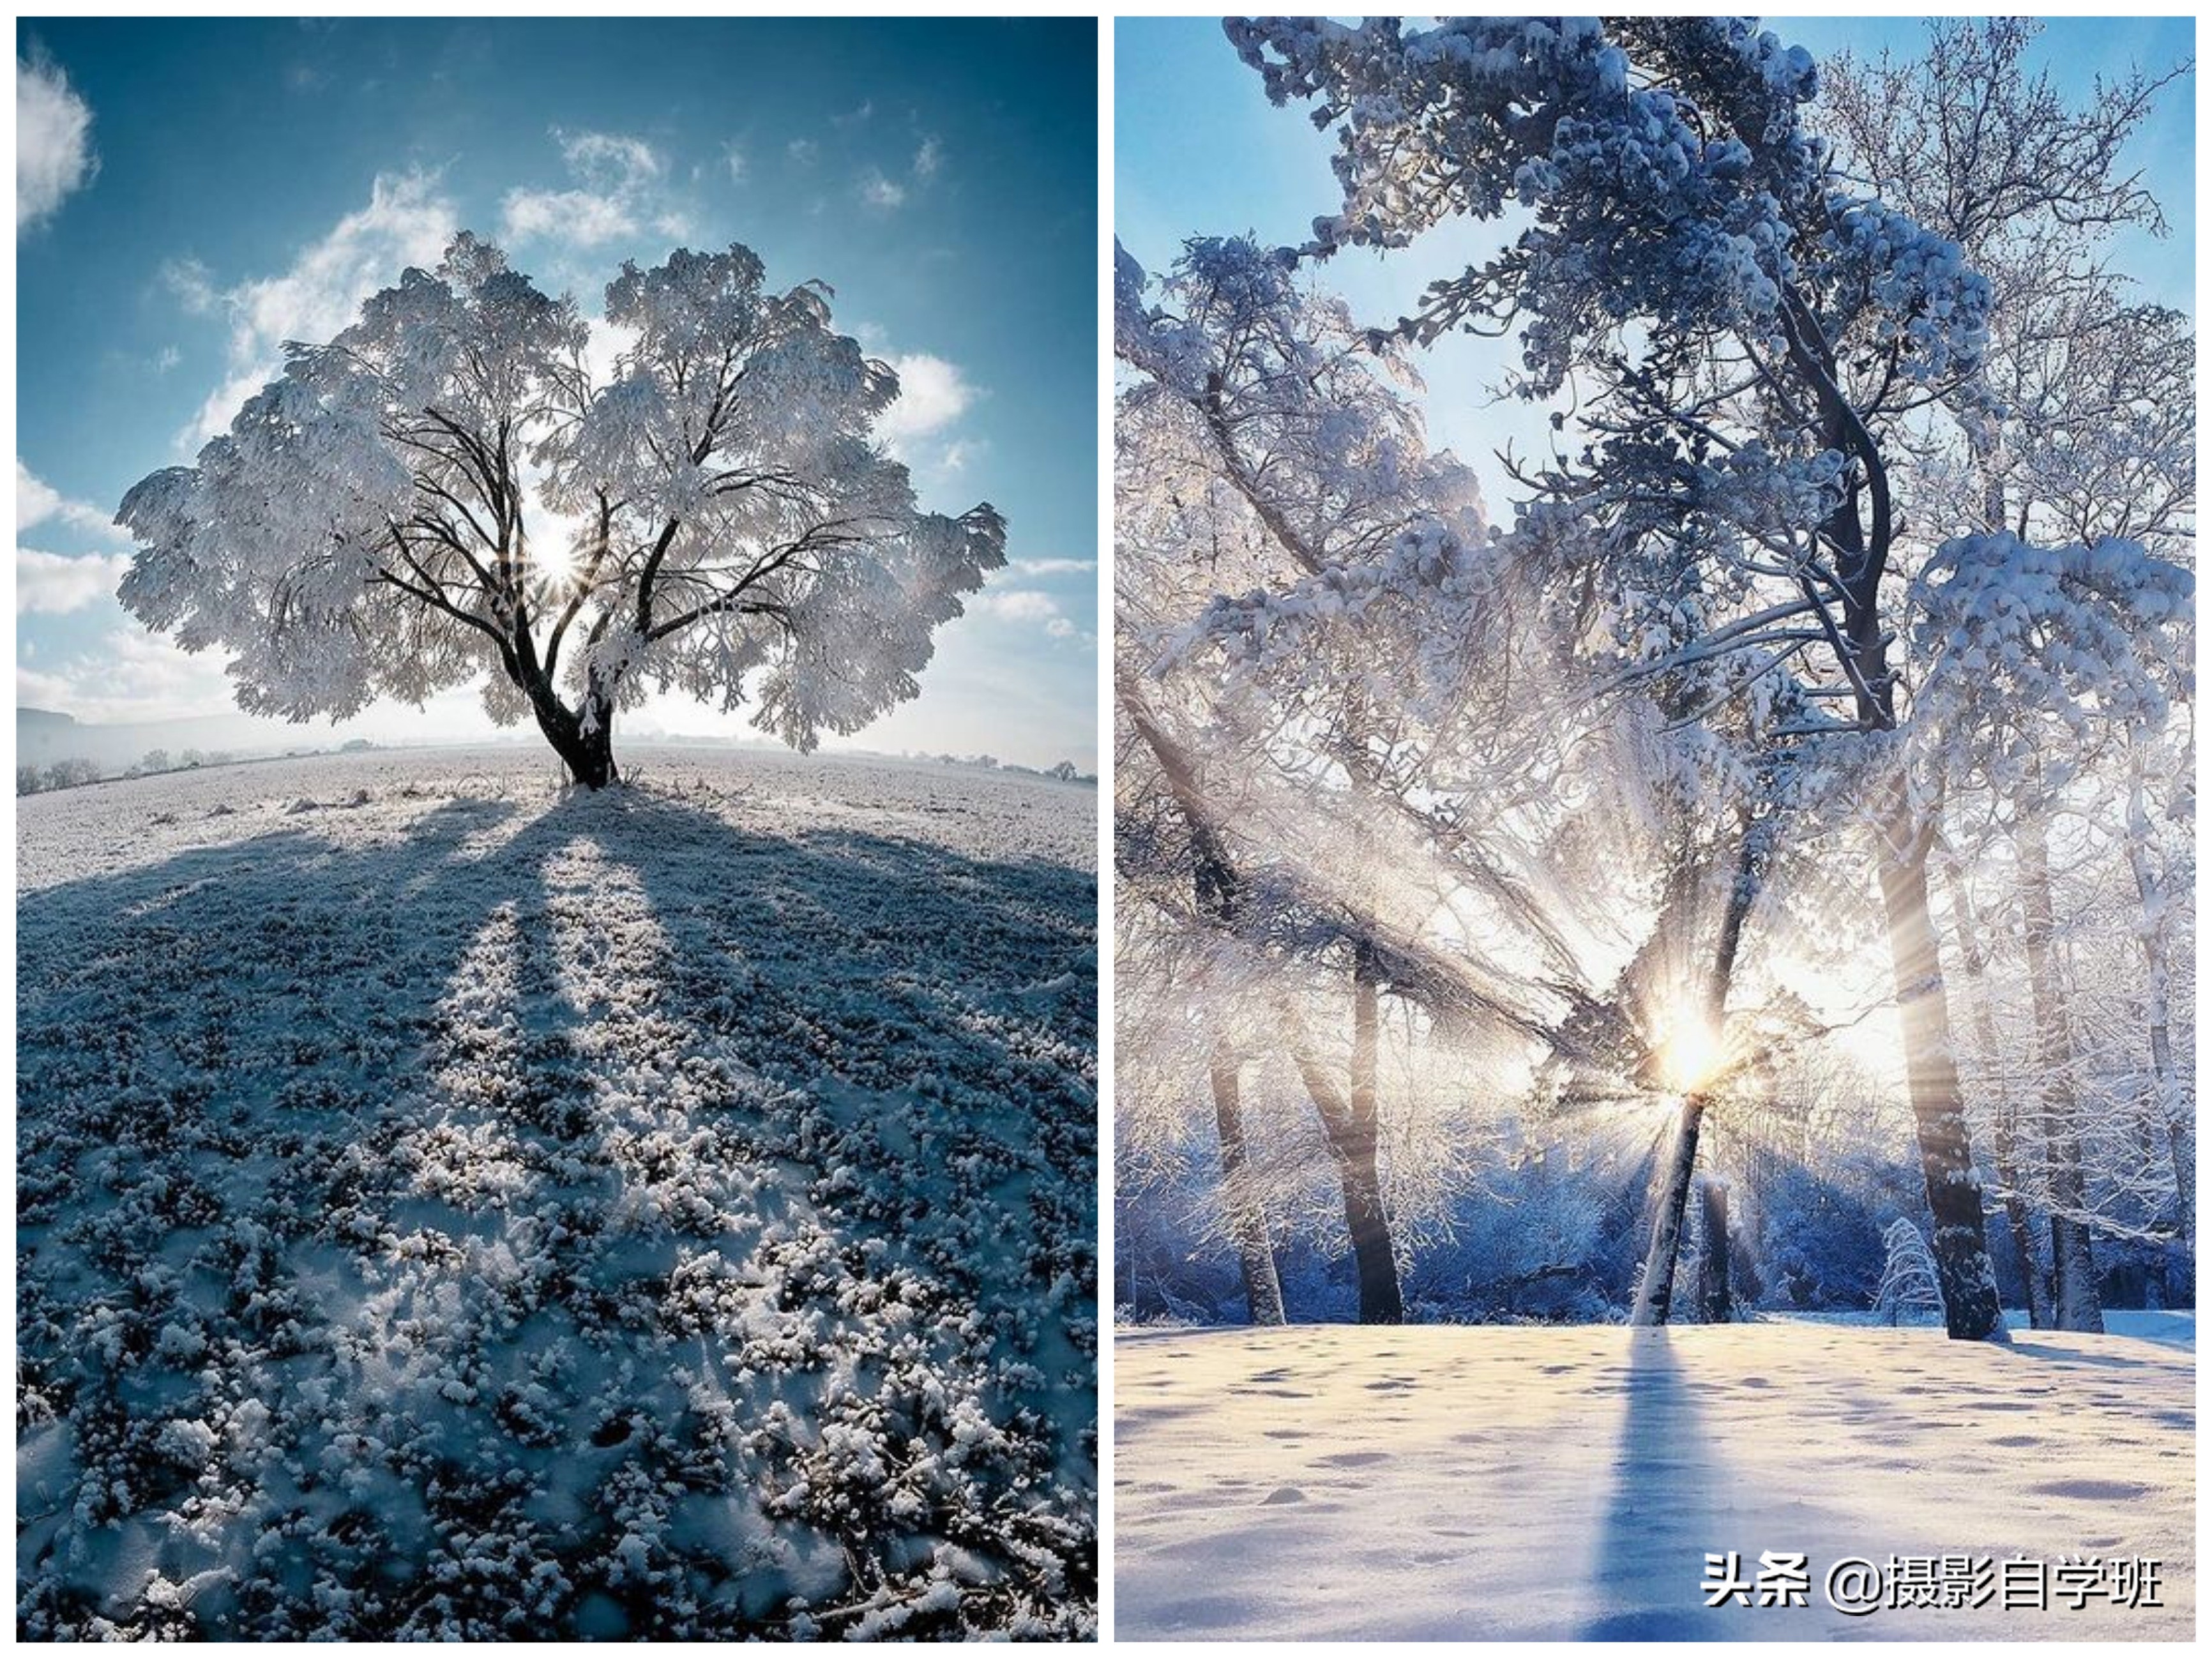 冬天的第一组雪景照片,必须美起来!这11个雪景摄影技巧能帮上你